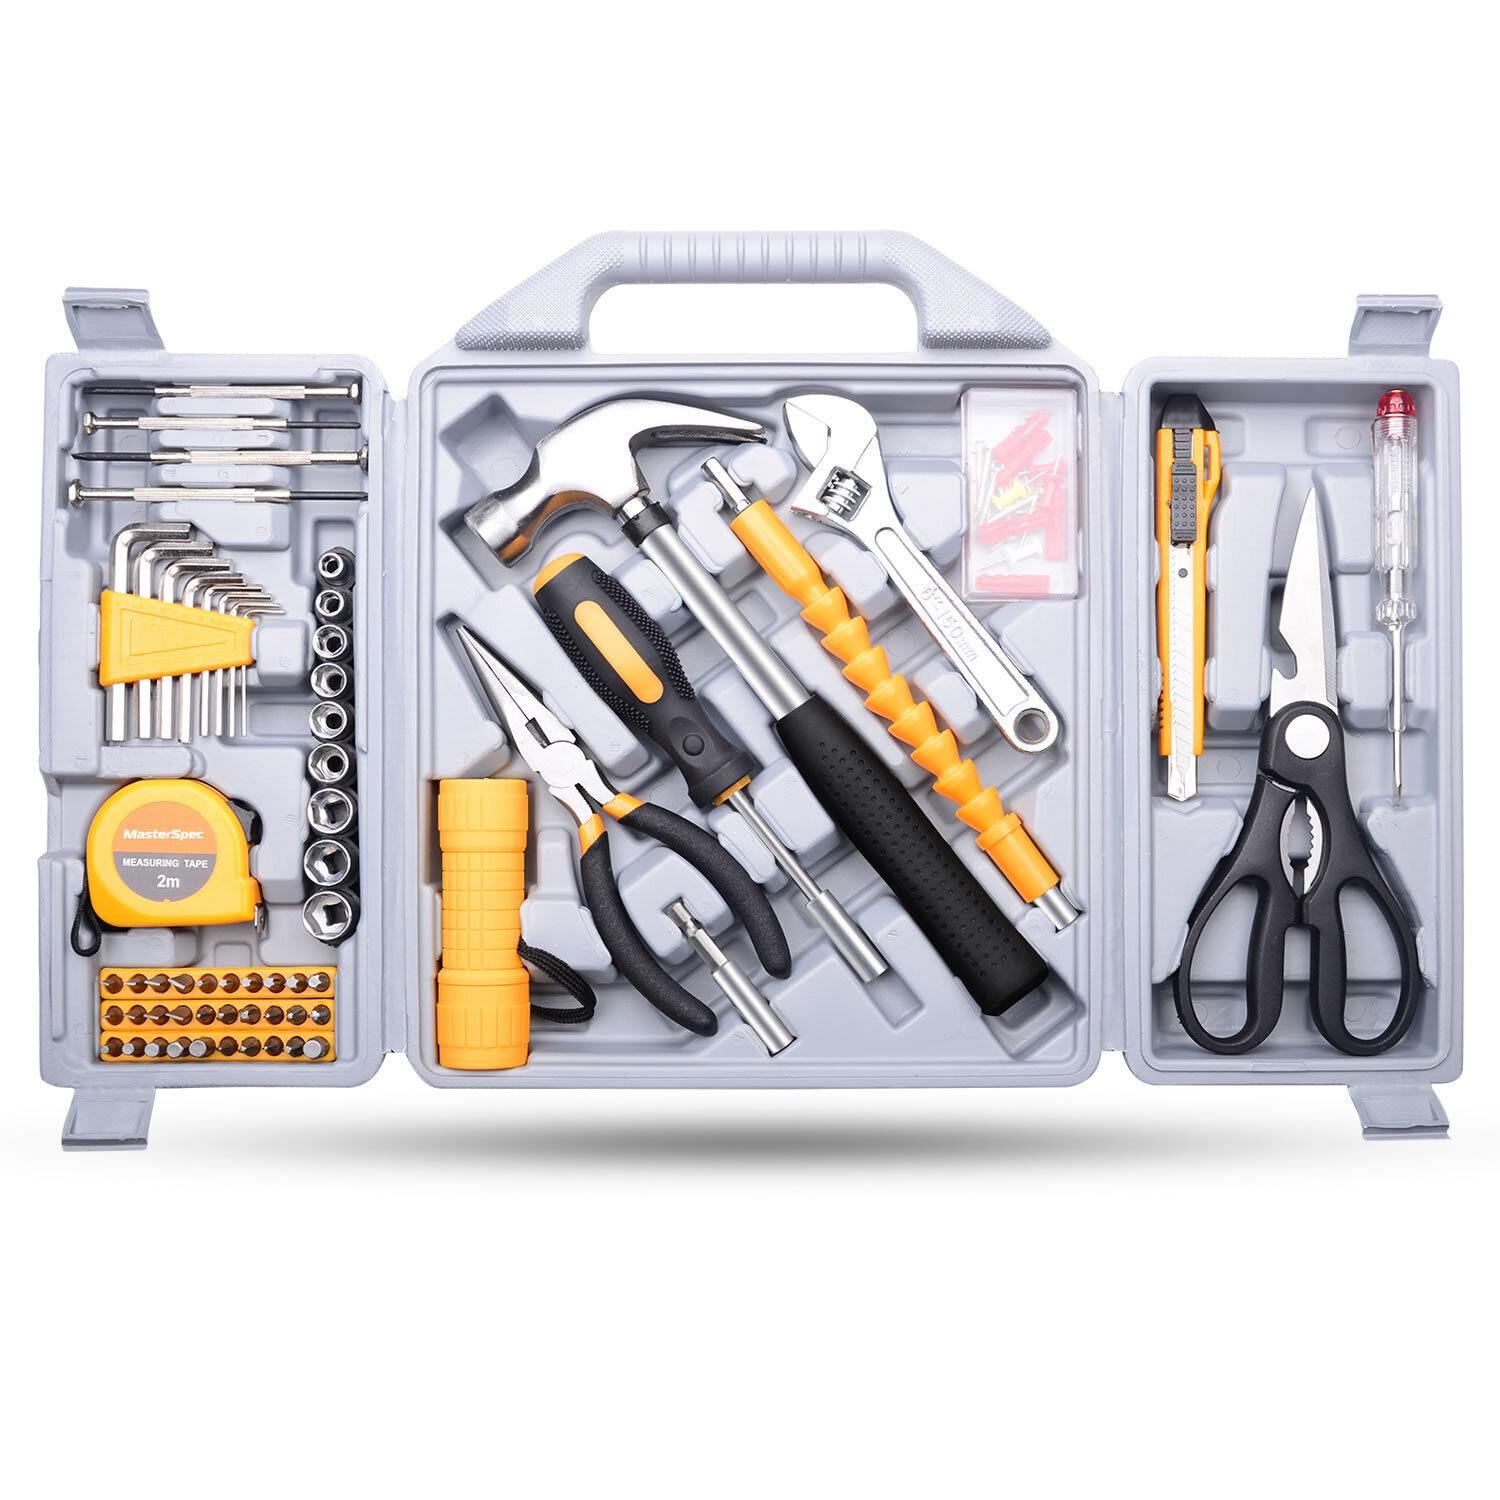 MasterSpec 100PCs Household Tool Kit Toolbox Set